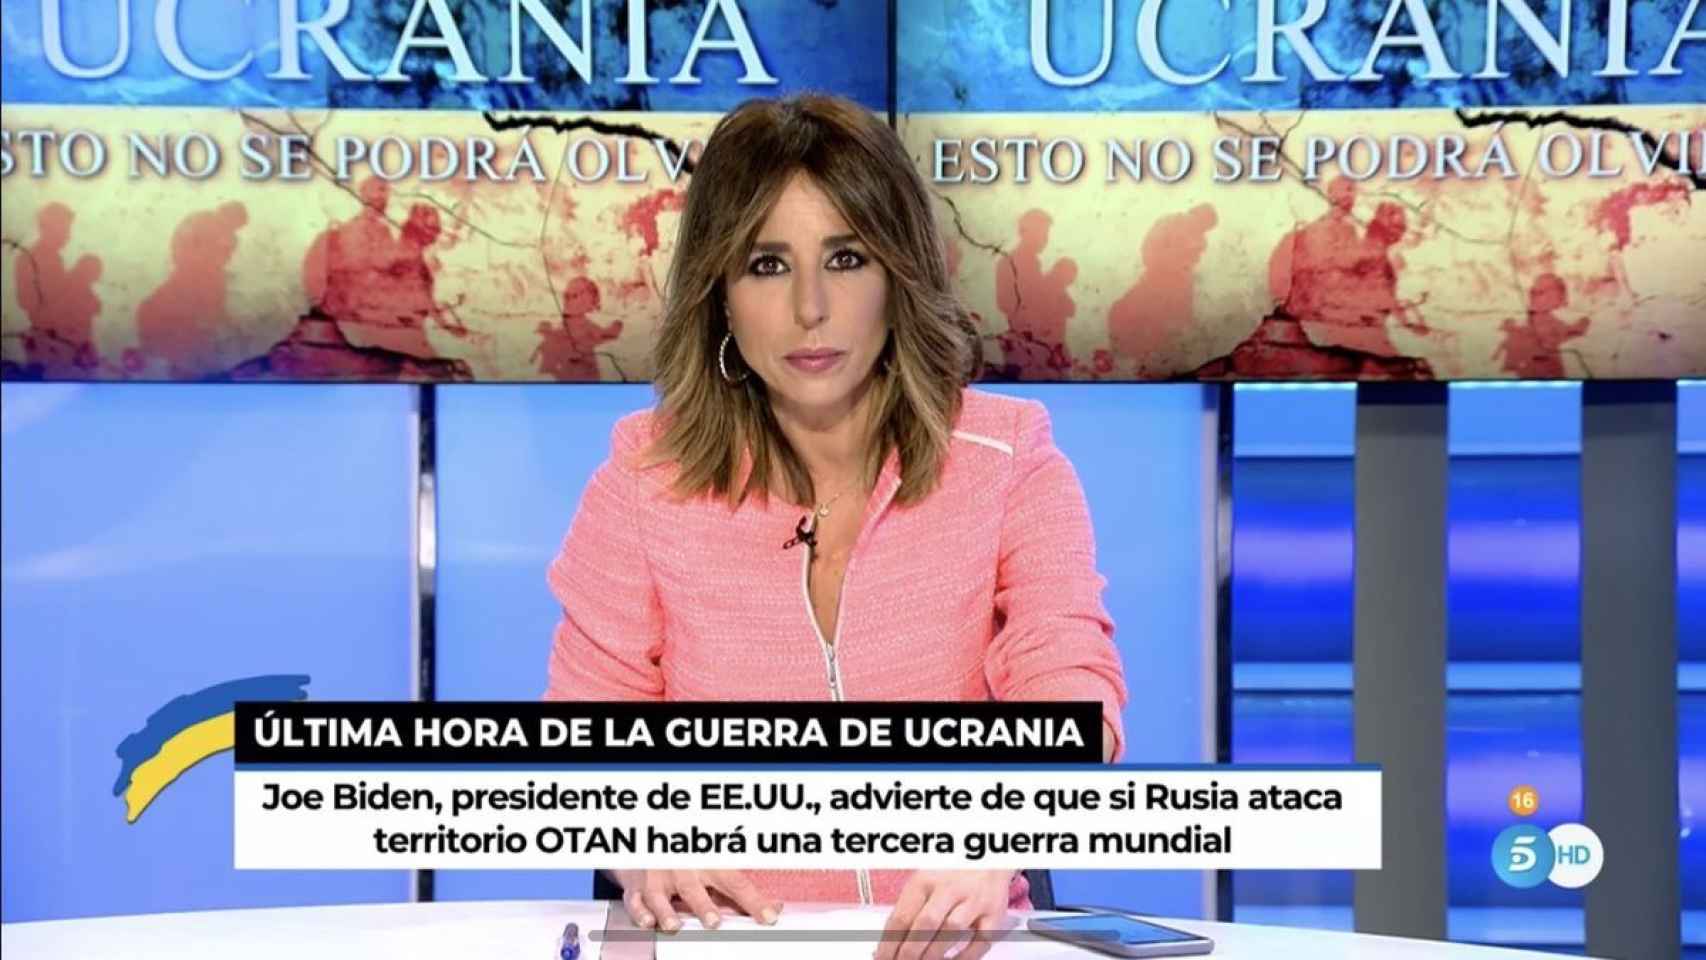 Especial de Telecinco sobre la invasión de Ucrania